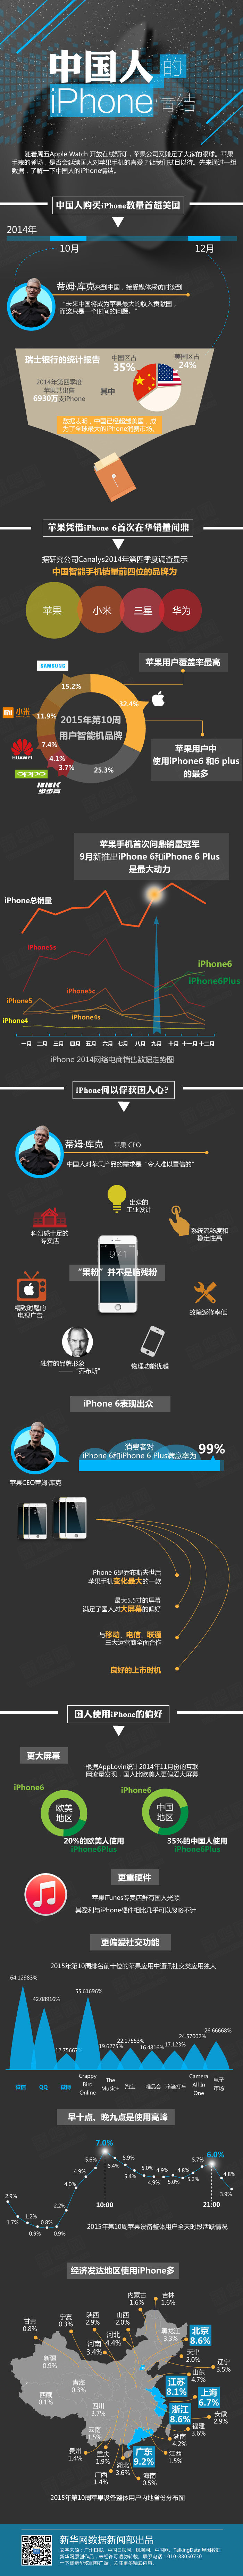 世界 新闻 中国人 iphone 情结 世界新闻 手机 黑红调